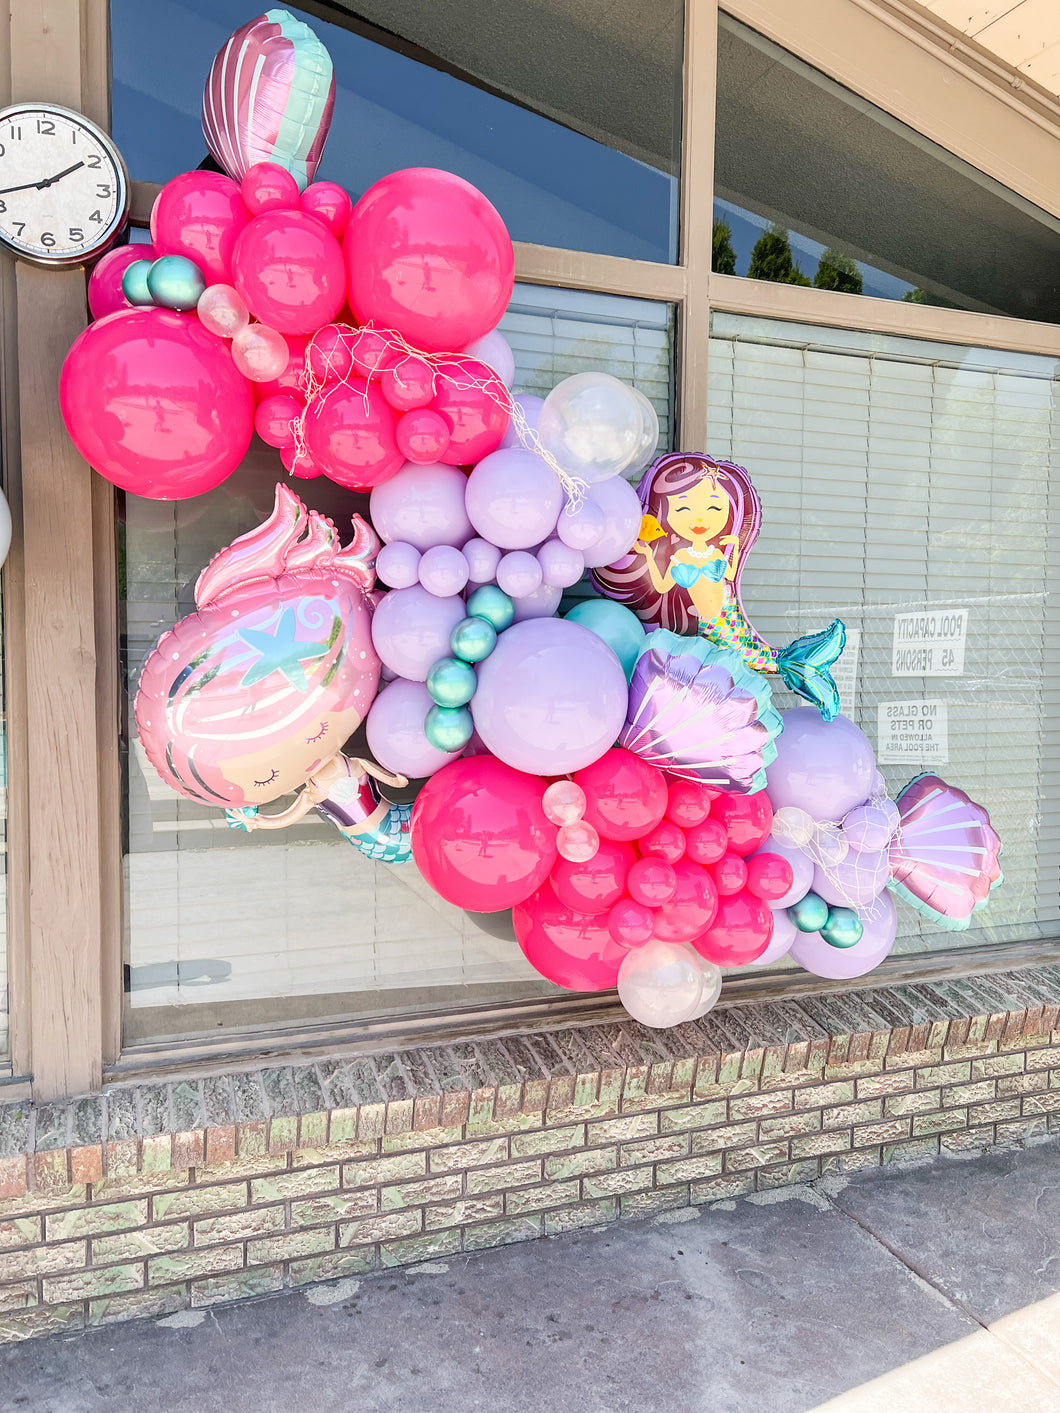 Mermaid Balloon Kit